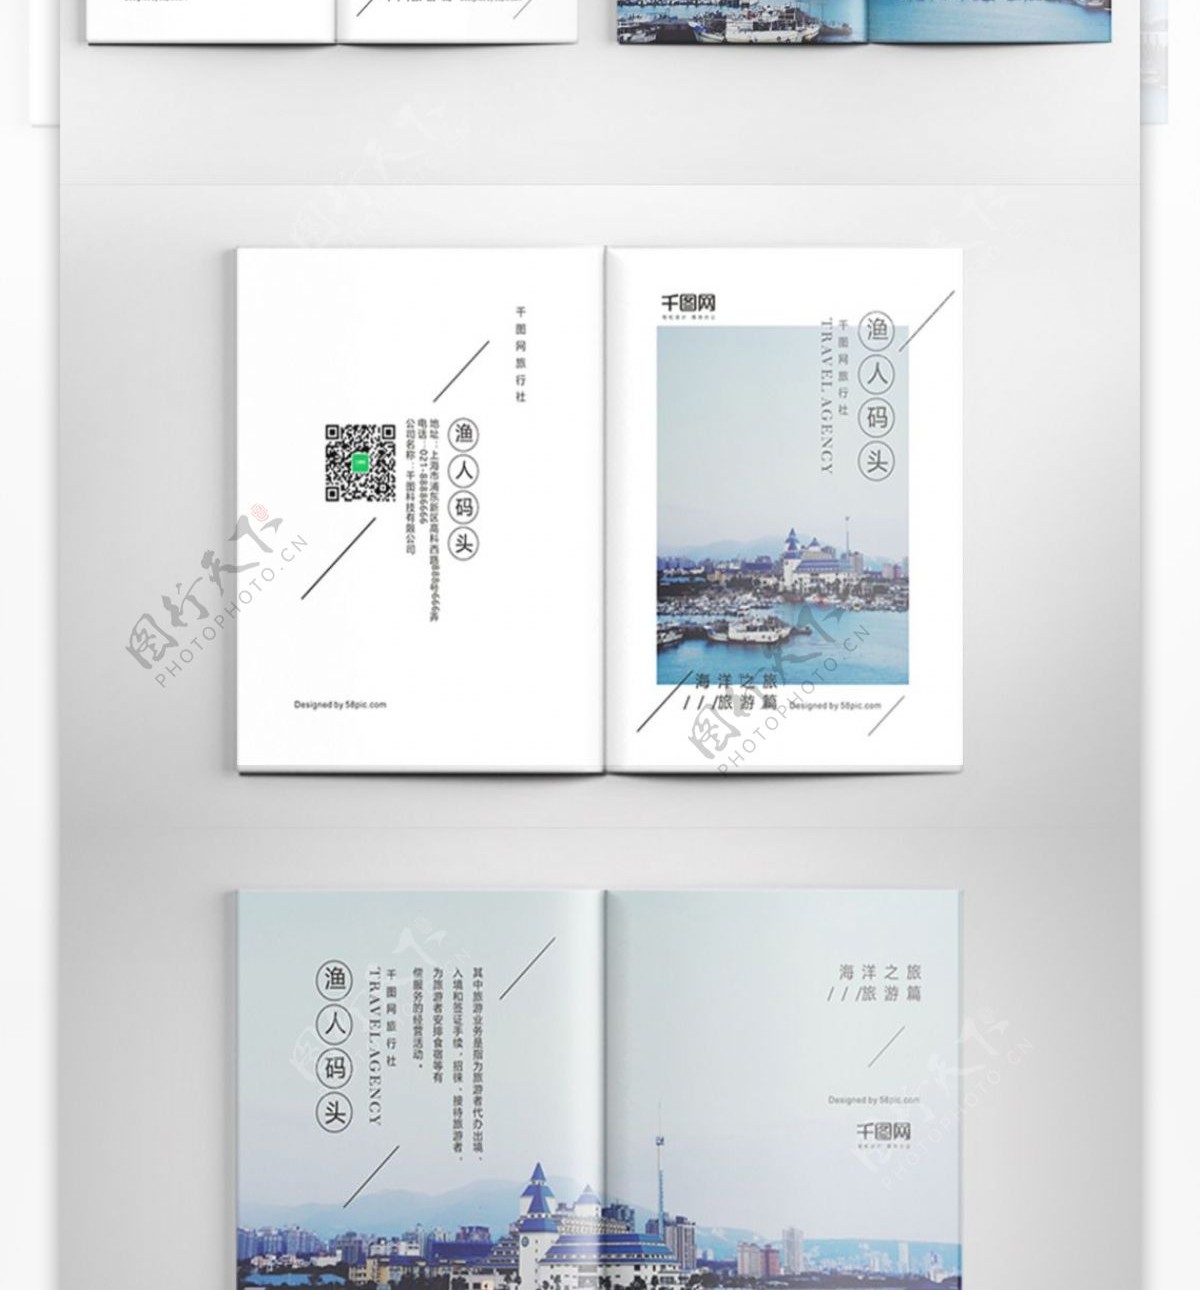 小清新时尚渔人码头旅行社旅游宣传画册